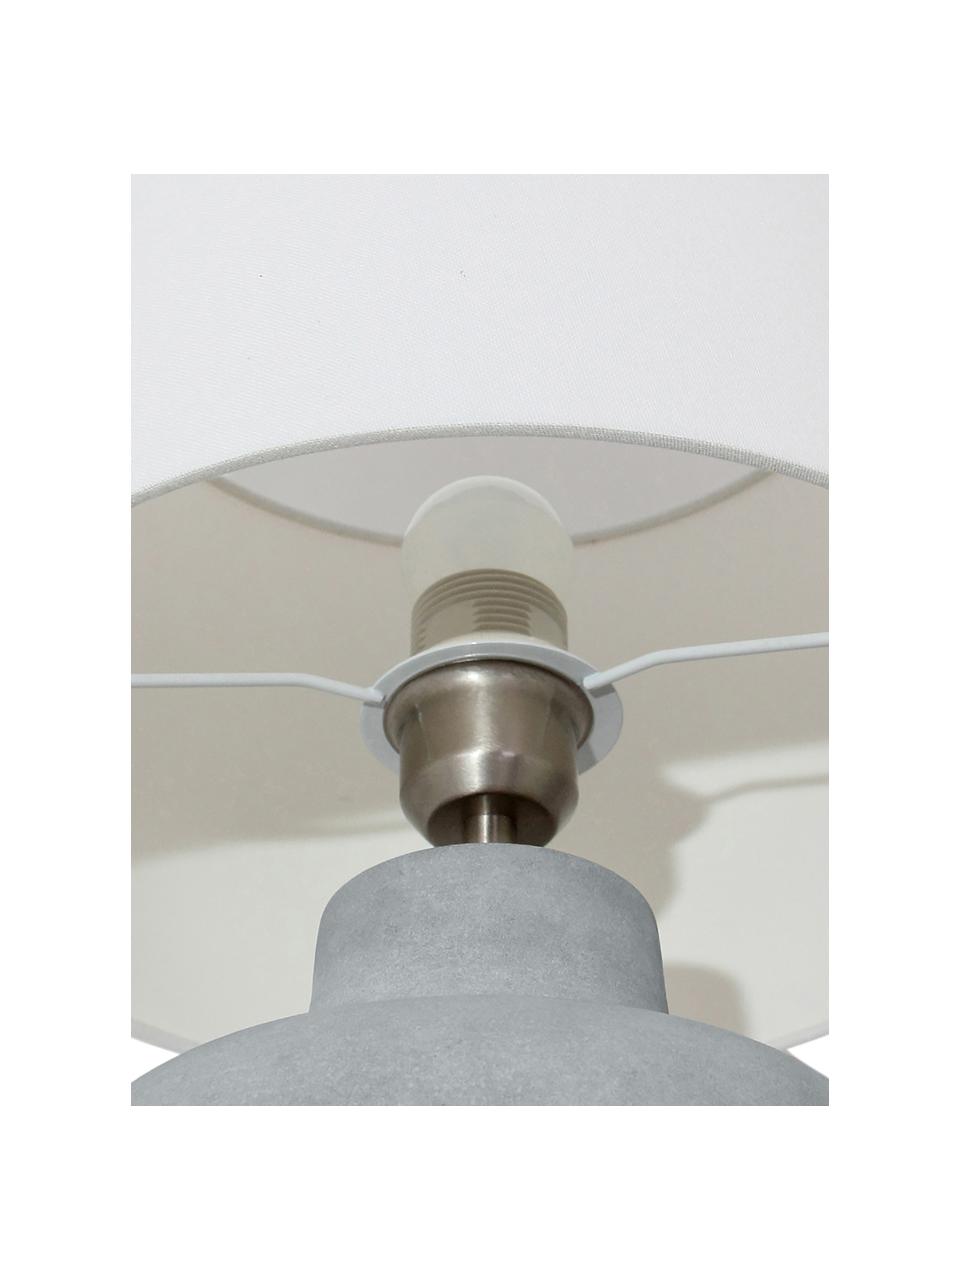 Handgefertigte Tischlampe Ike mit Betonfuß, Lampenschirm: 100% Leinen, Lampenfuß: Beton, Grau, Weiß, Ø 30 x H 45 cm